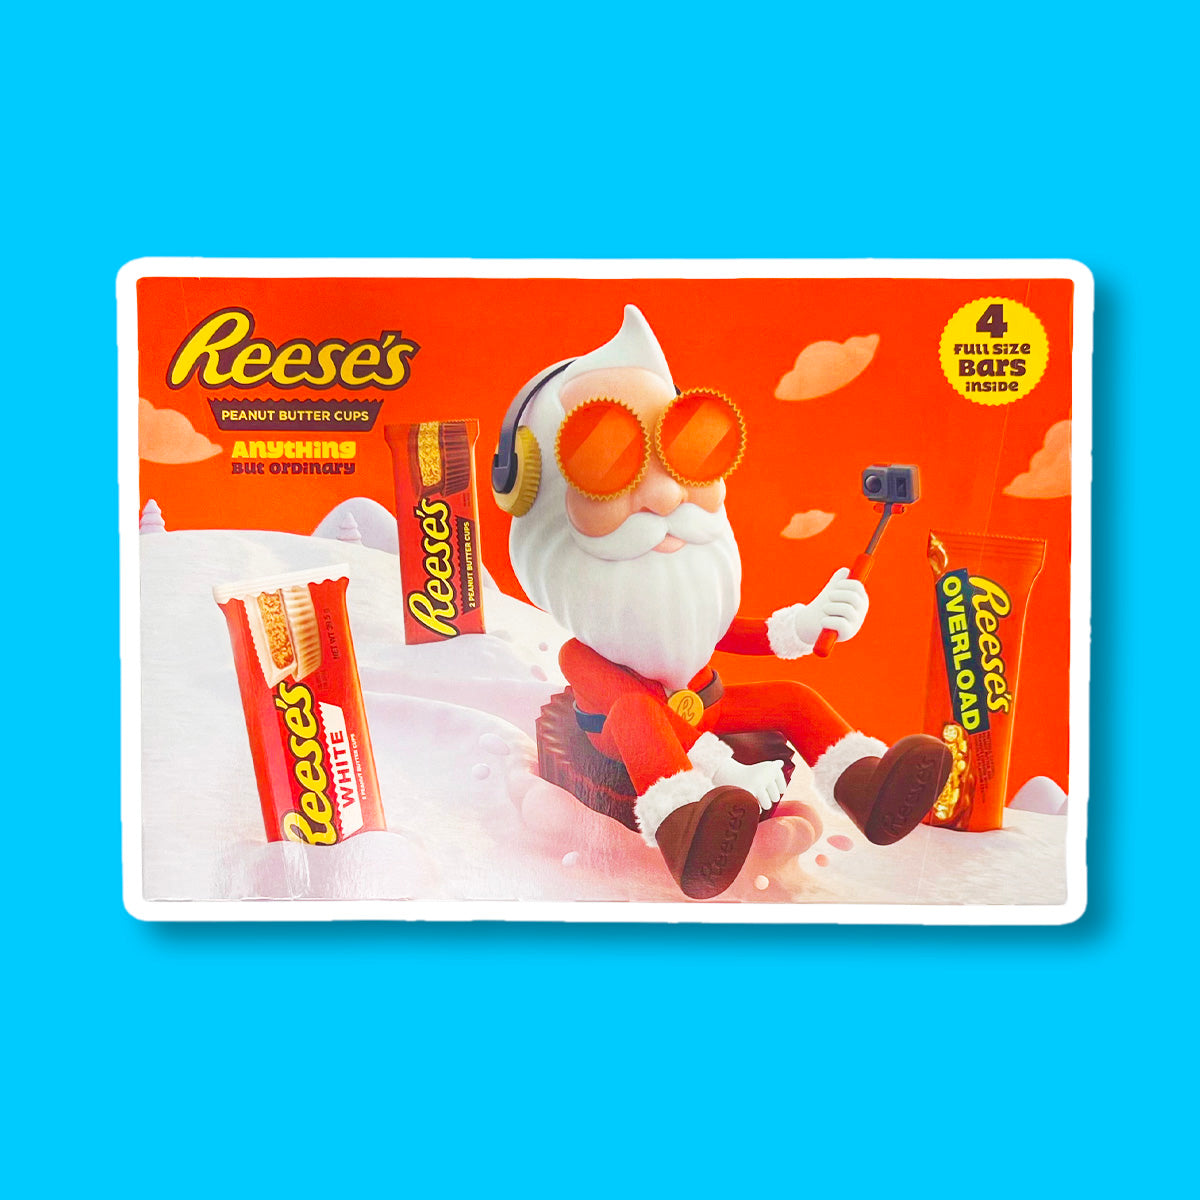 Un emballage orange sur fond bleu avec un père Noël stylé qui se filme entrain de descendre une montage enneigée assis sur un chocolat Reese’s géant et il y a 3 paquet de chocolat dans la neige